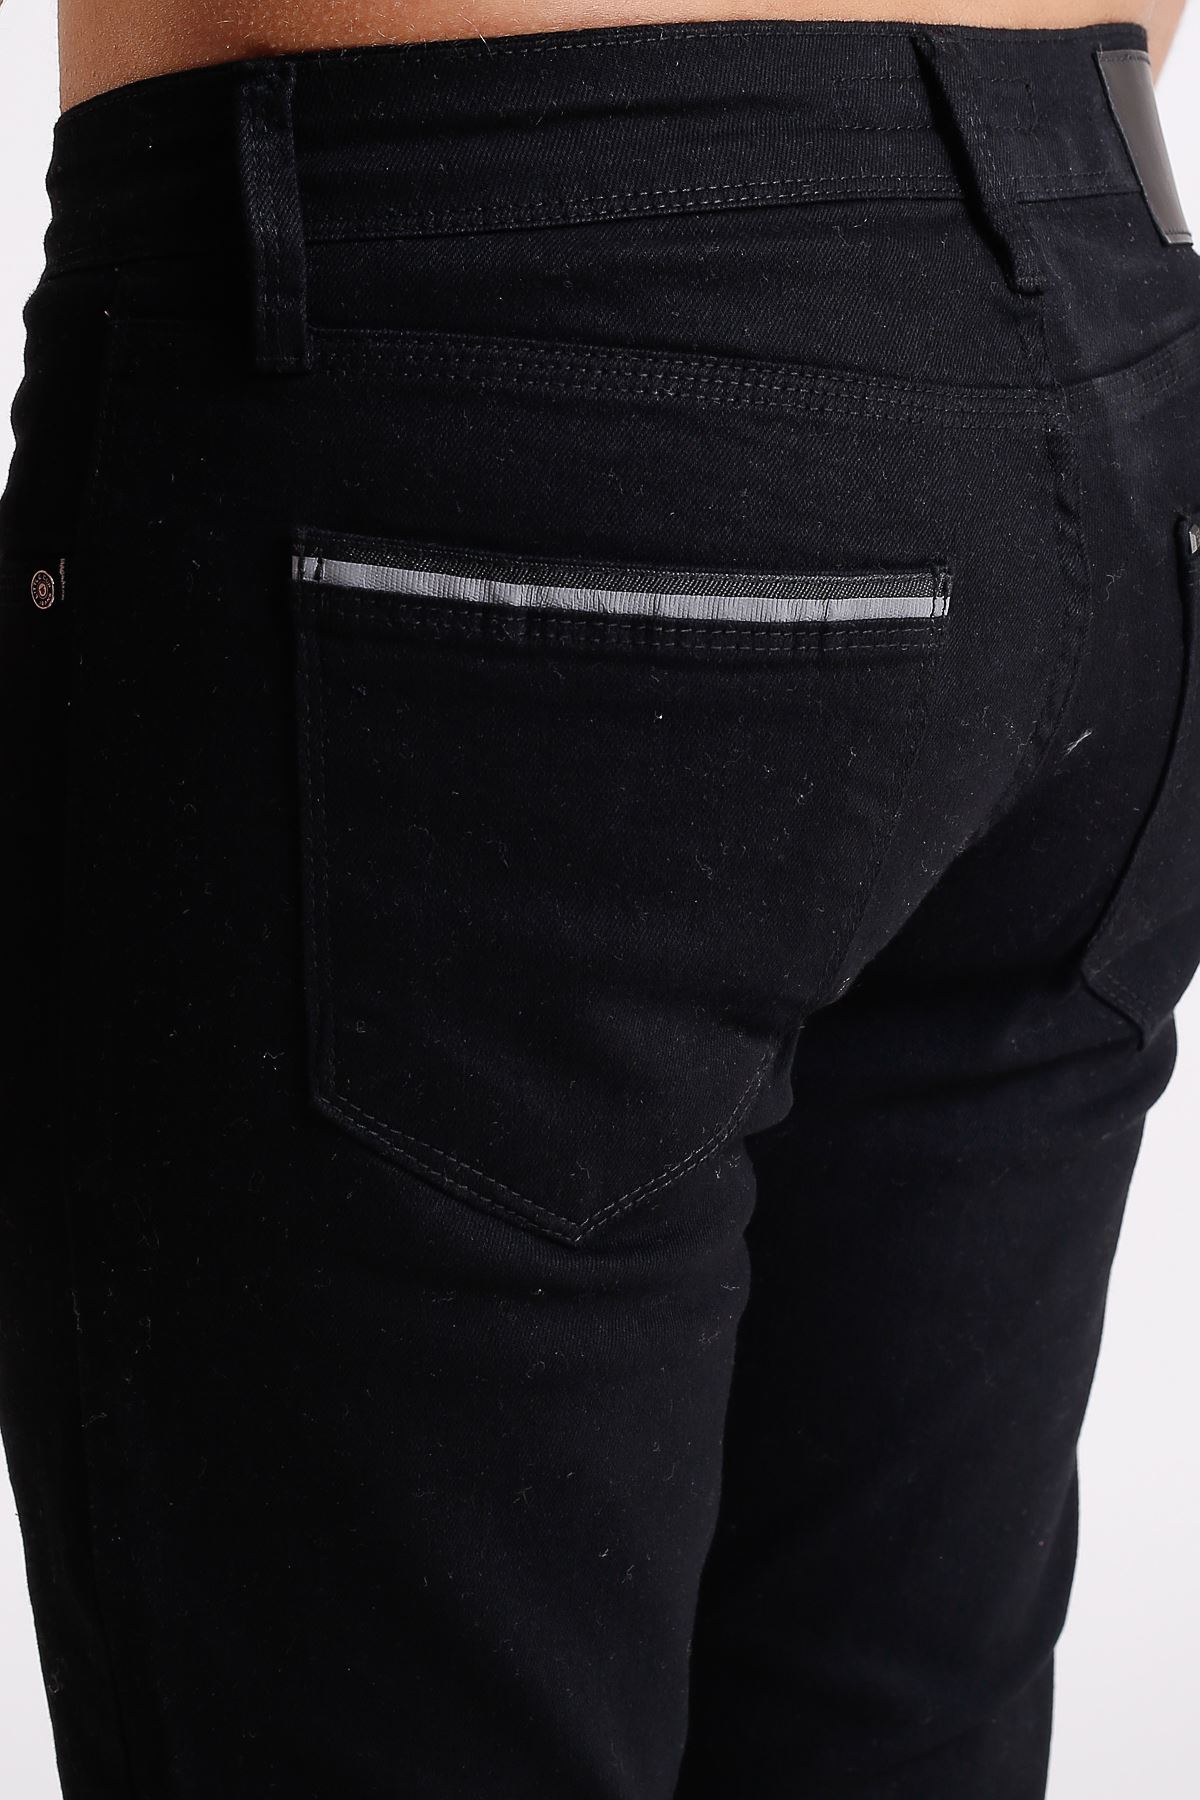 Reflektör Şerit Cepli Siyah Slim Fit Fermuarlı Erkek Jeans Pantolon